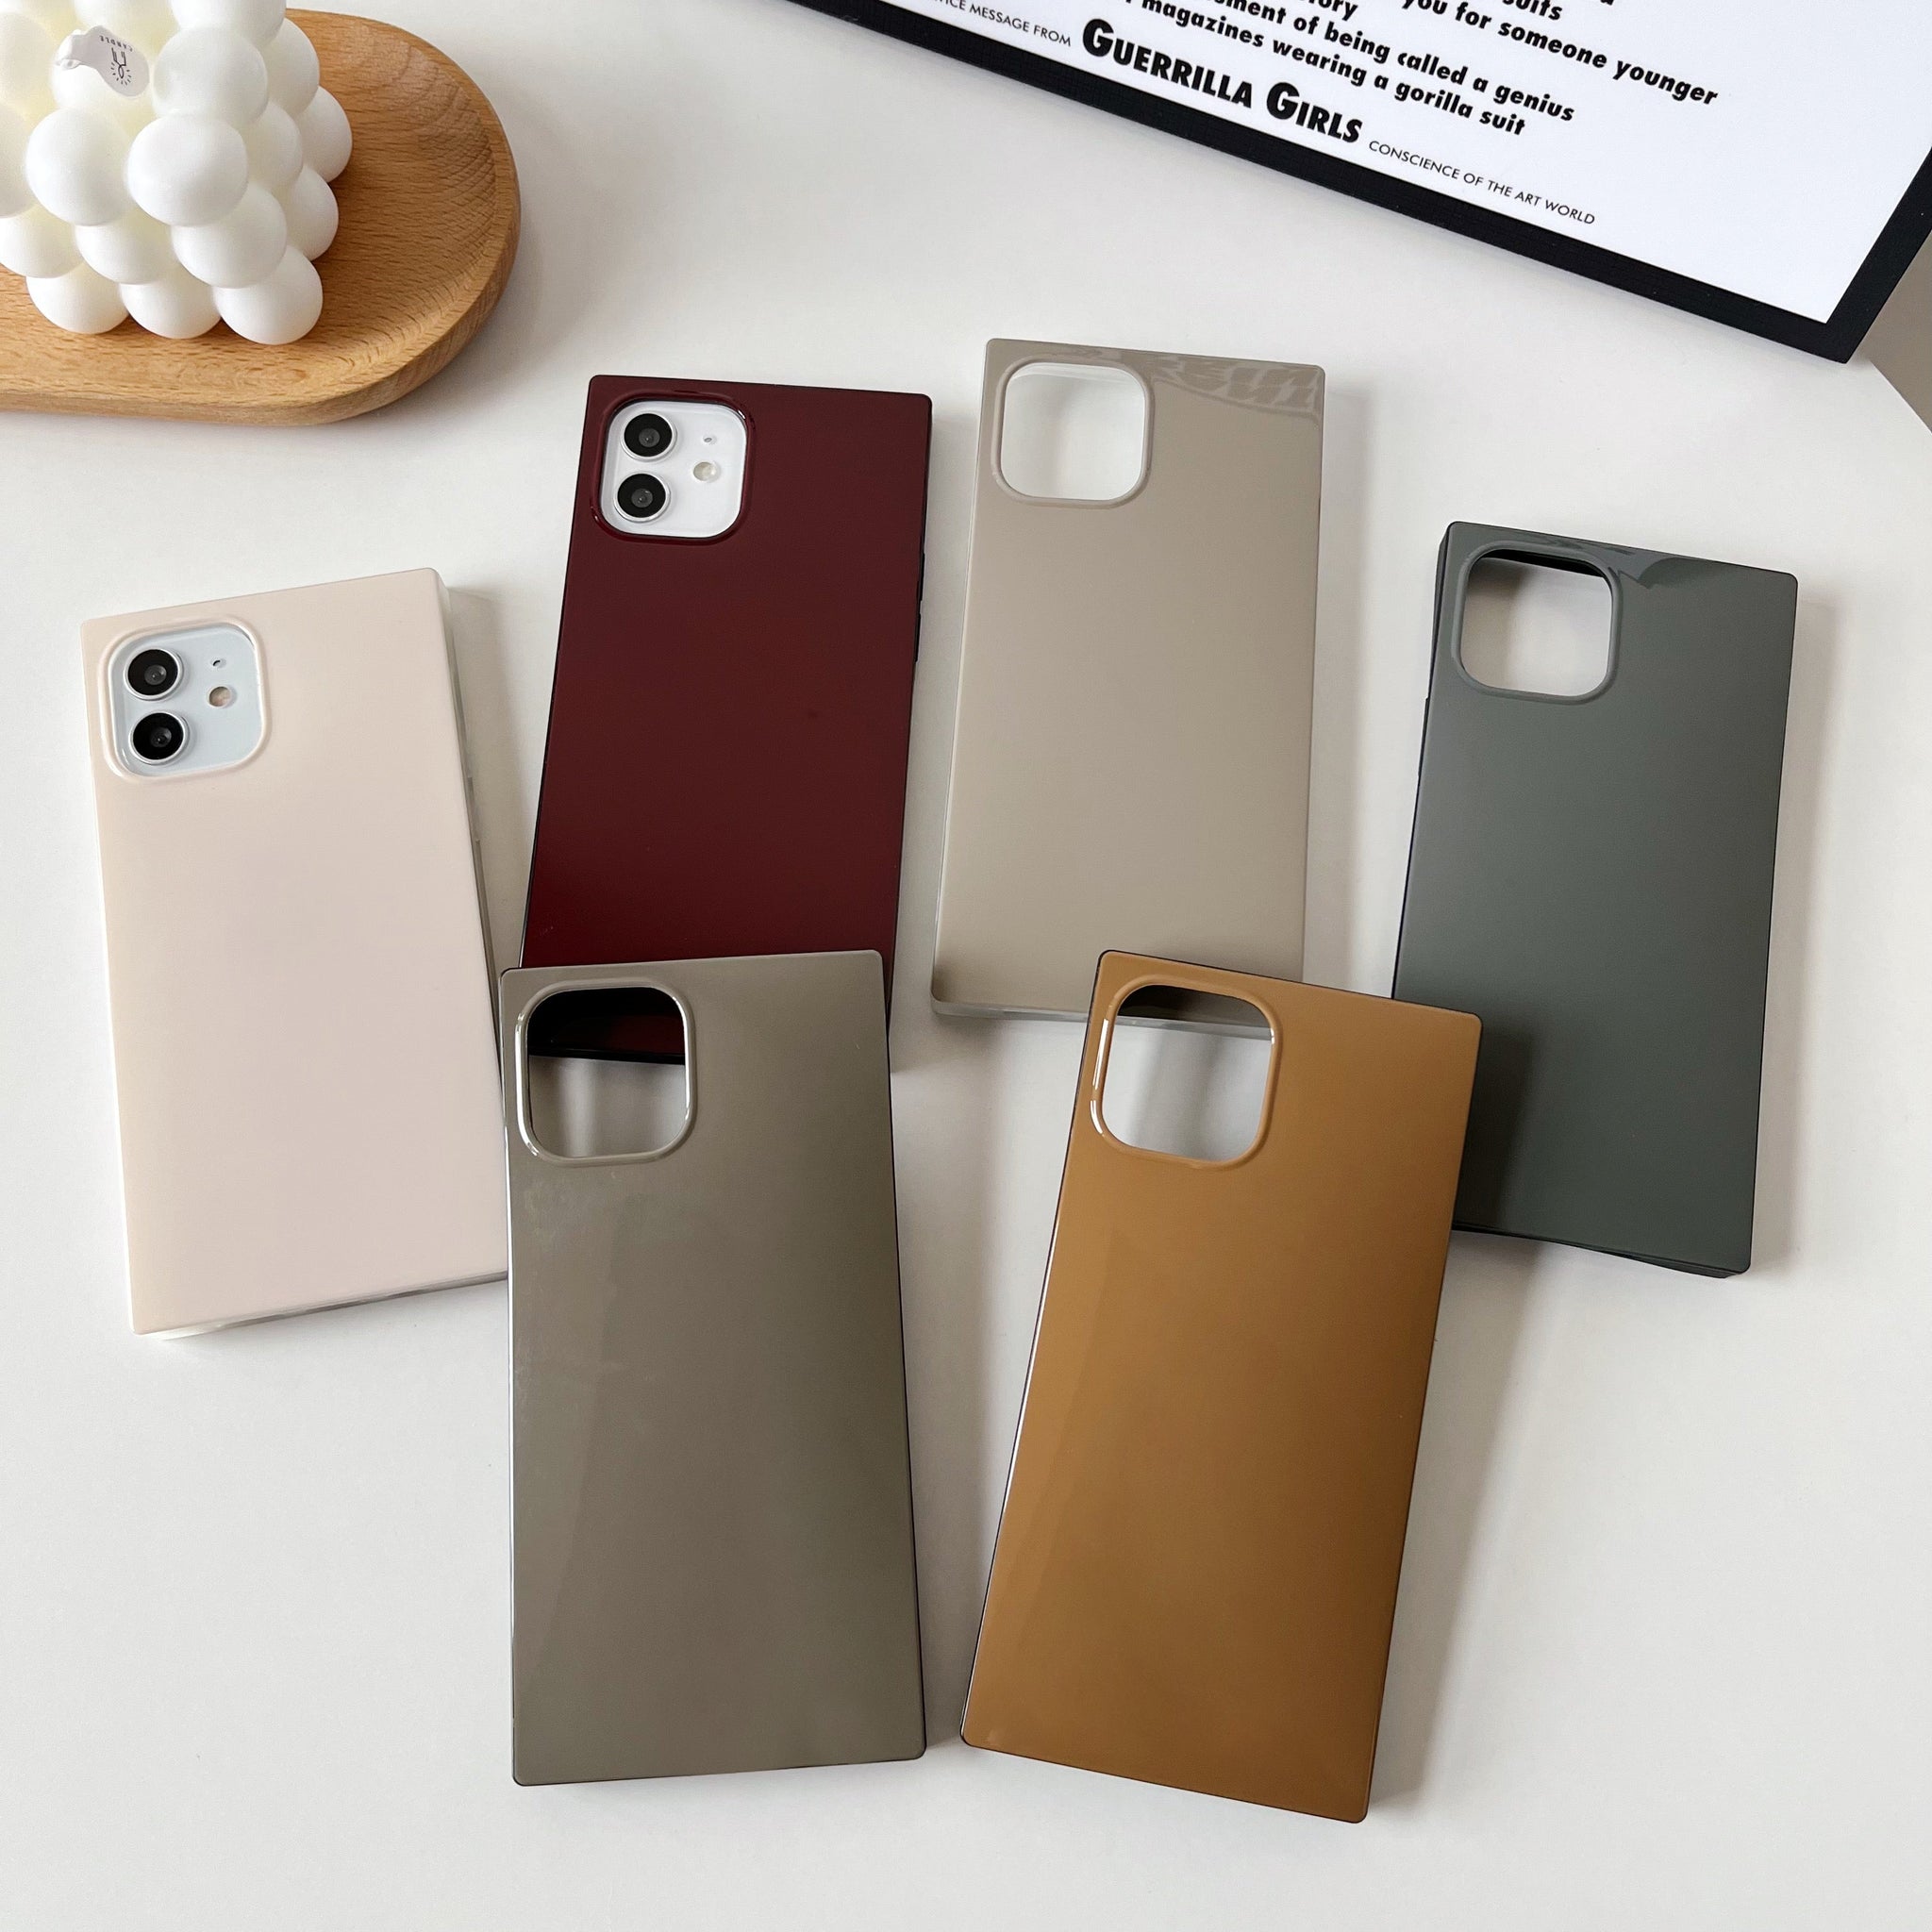 iPhone 11 Case Square Neutral Plain Color (Asphalt Gray)